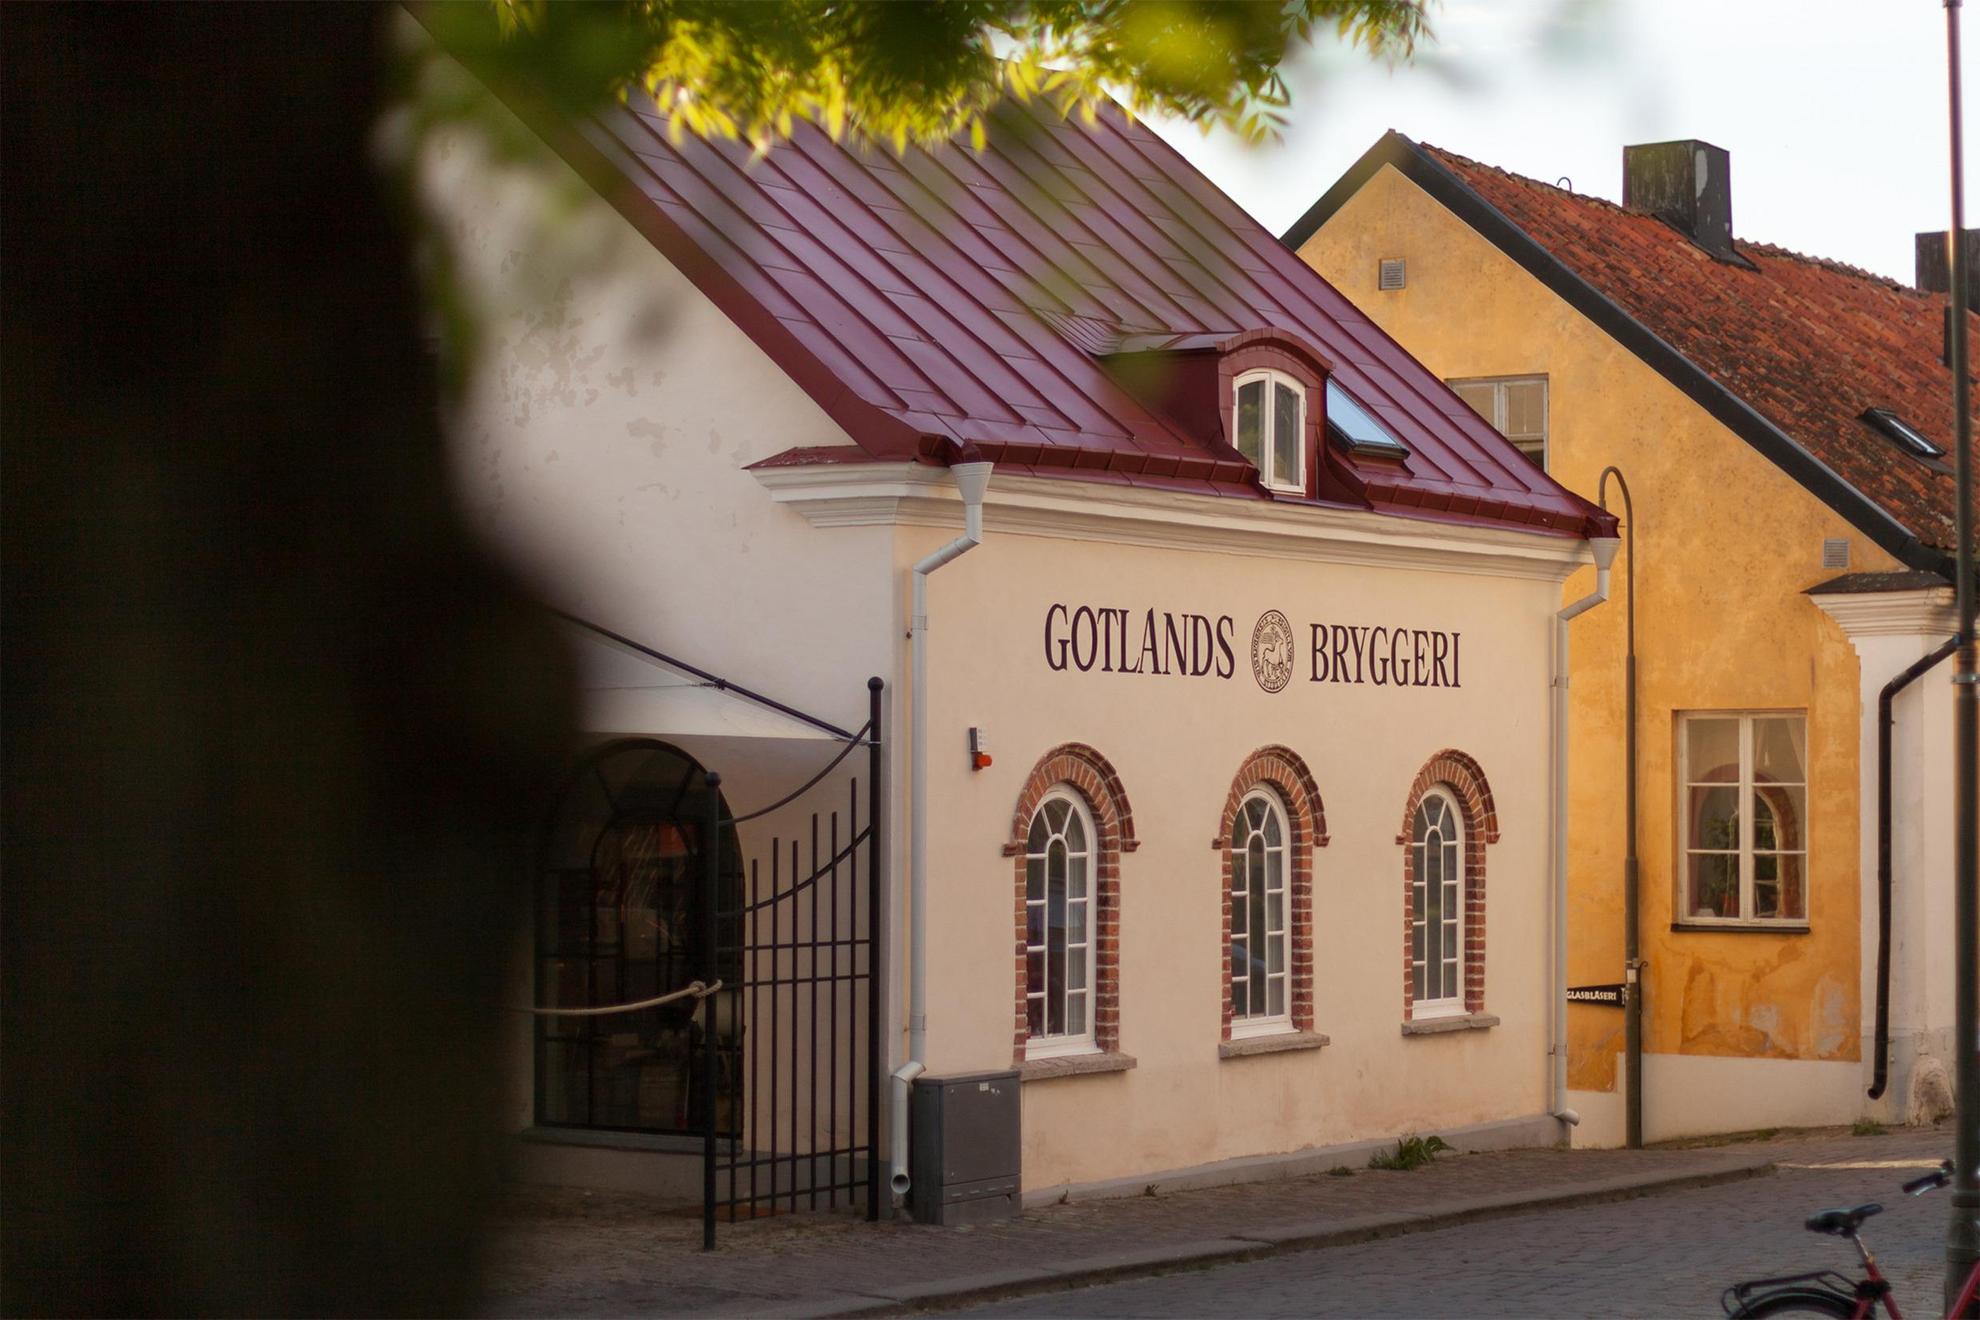 Eine Straße mit einem weißen Haus auf dem in dunkelroter Schridt Gotlands Bryggeri geschrieben steht.